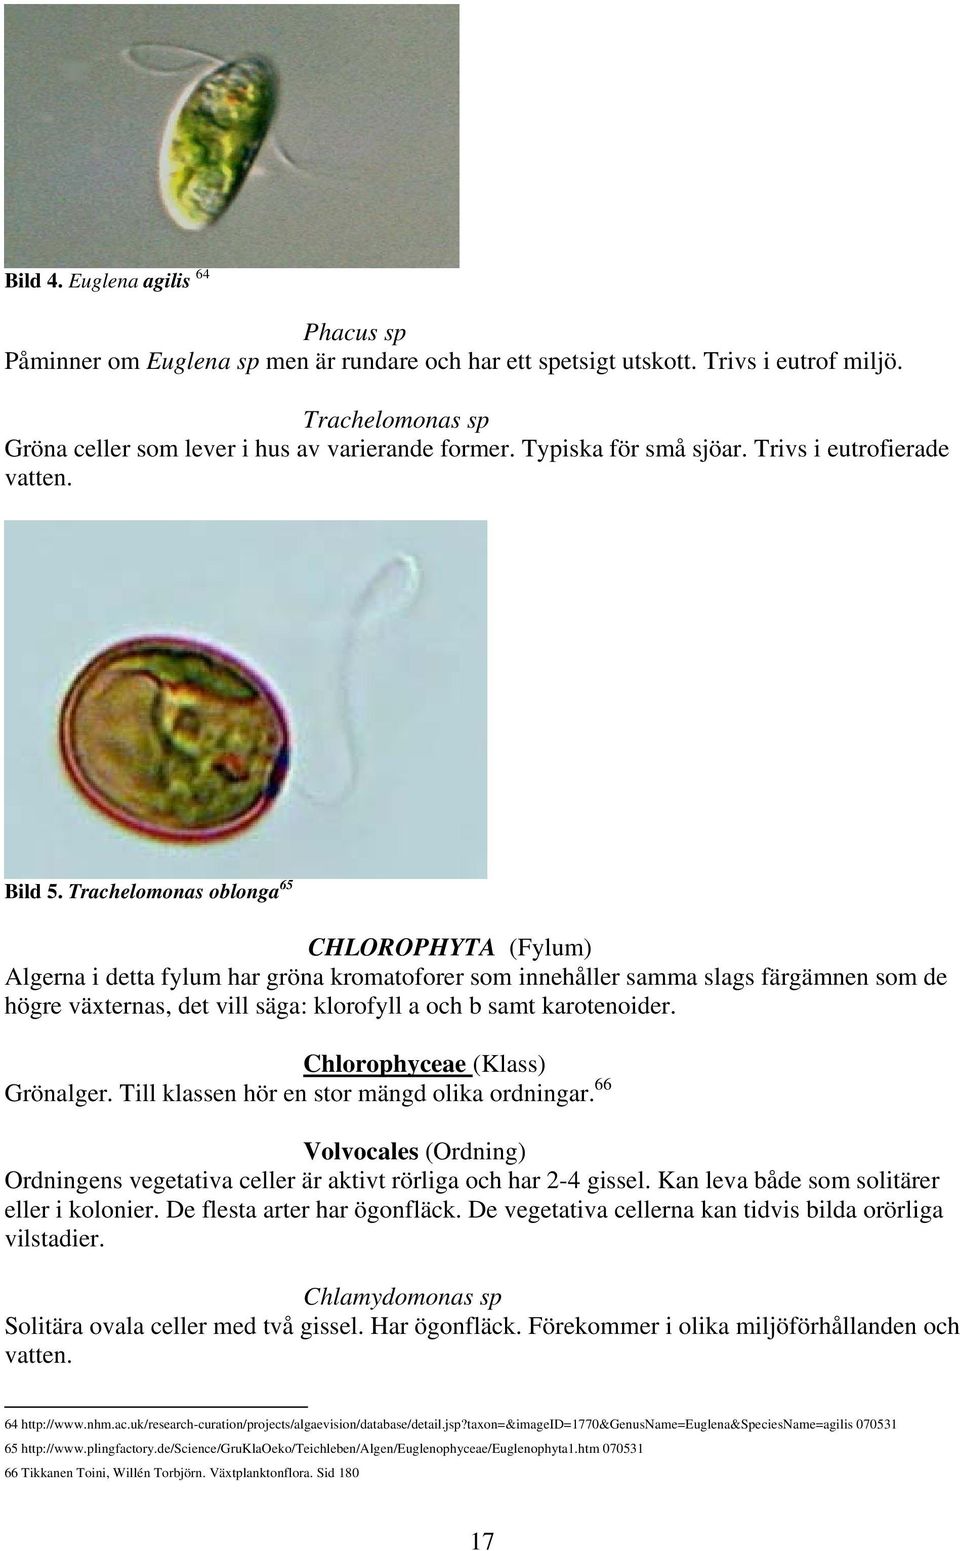 Trachelomonas oblonga 65 CHLOROPHYTA (Fylum) Algerna i detta fylum har gröna kromatoforer som innehåller samma slags färgämnen som de högre växternas, det vill säga: klorofyll a och b samt